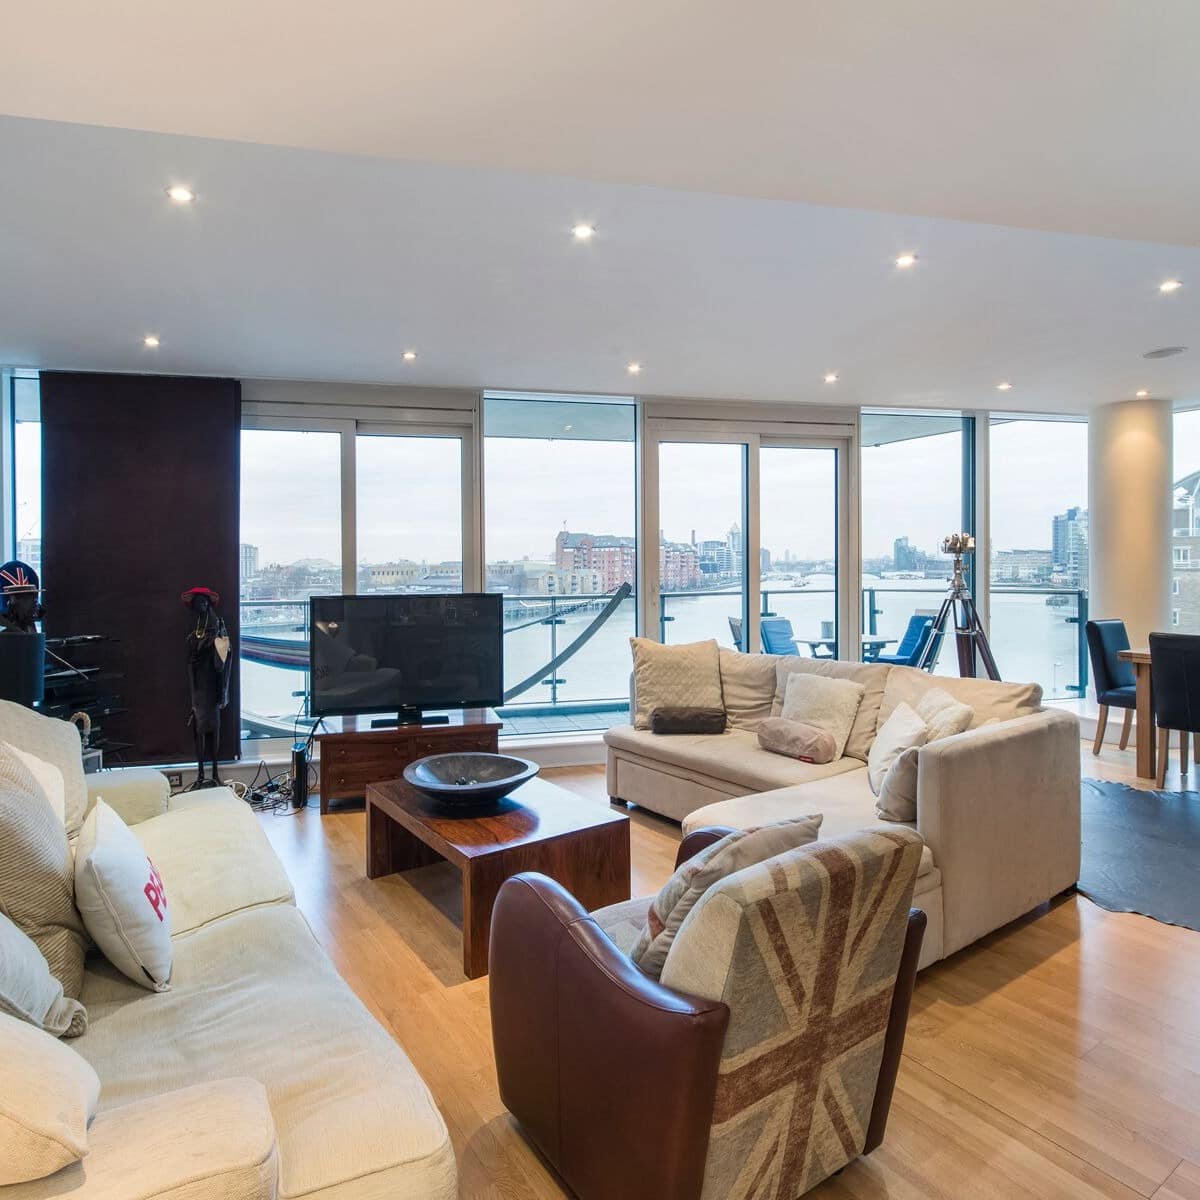 Wohnzimmer einer Ferienwohnung in London mit Blick auf die Themse